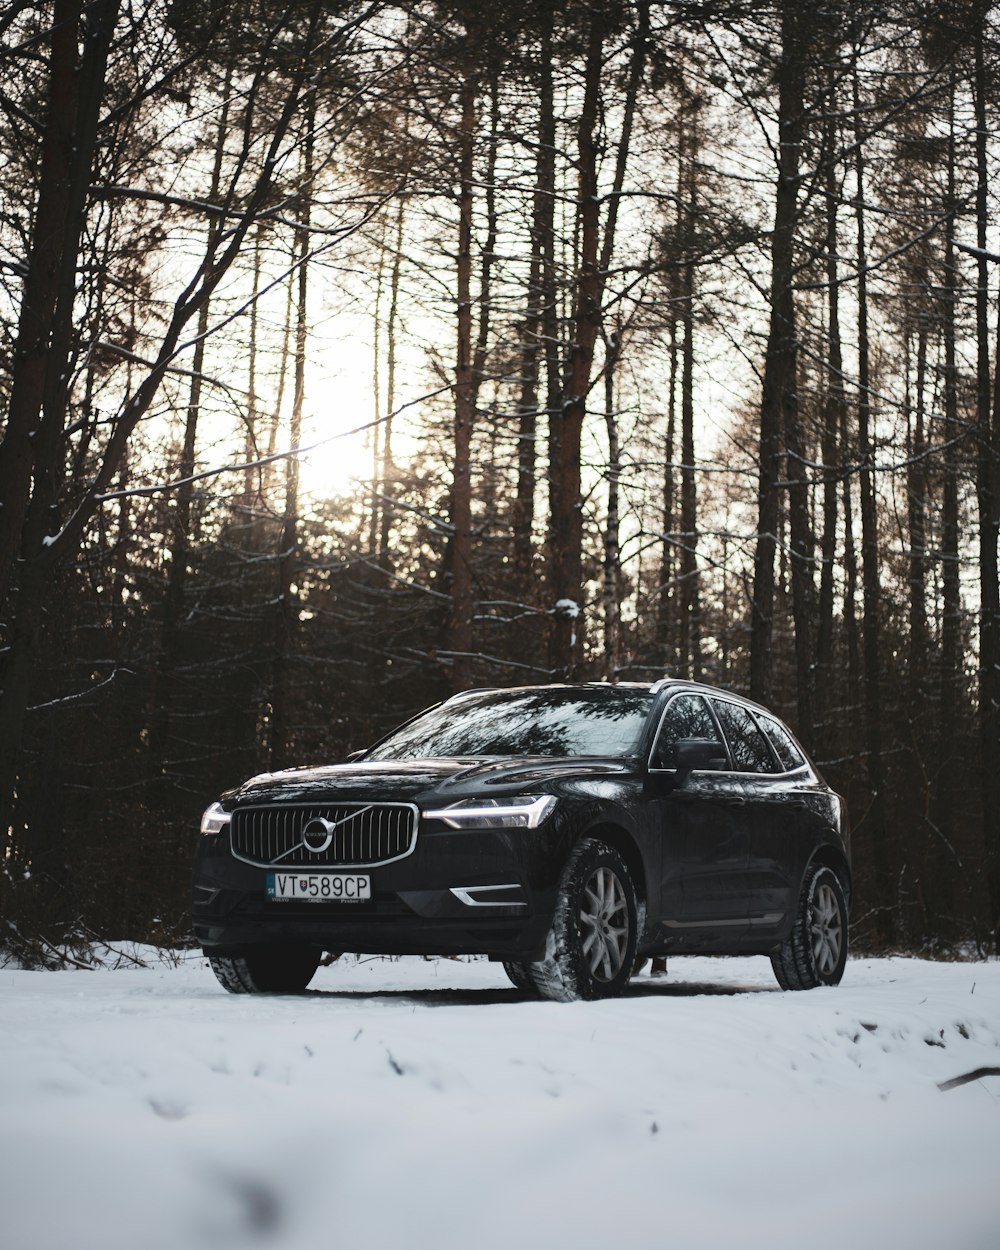 Ein Volvo parkt im Schnee